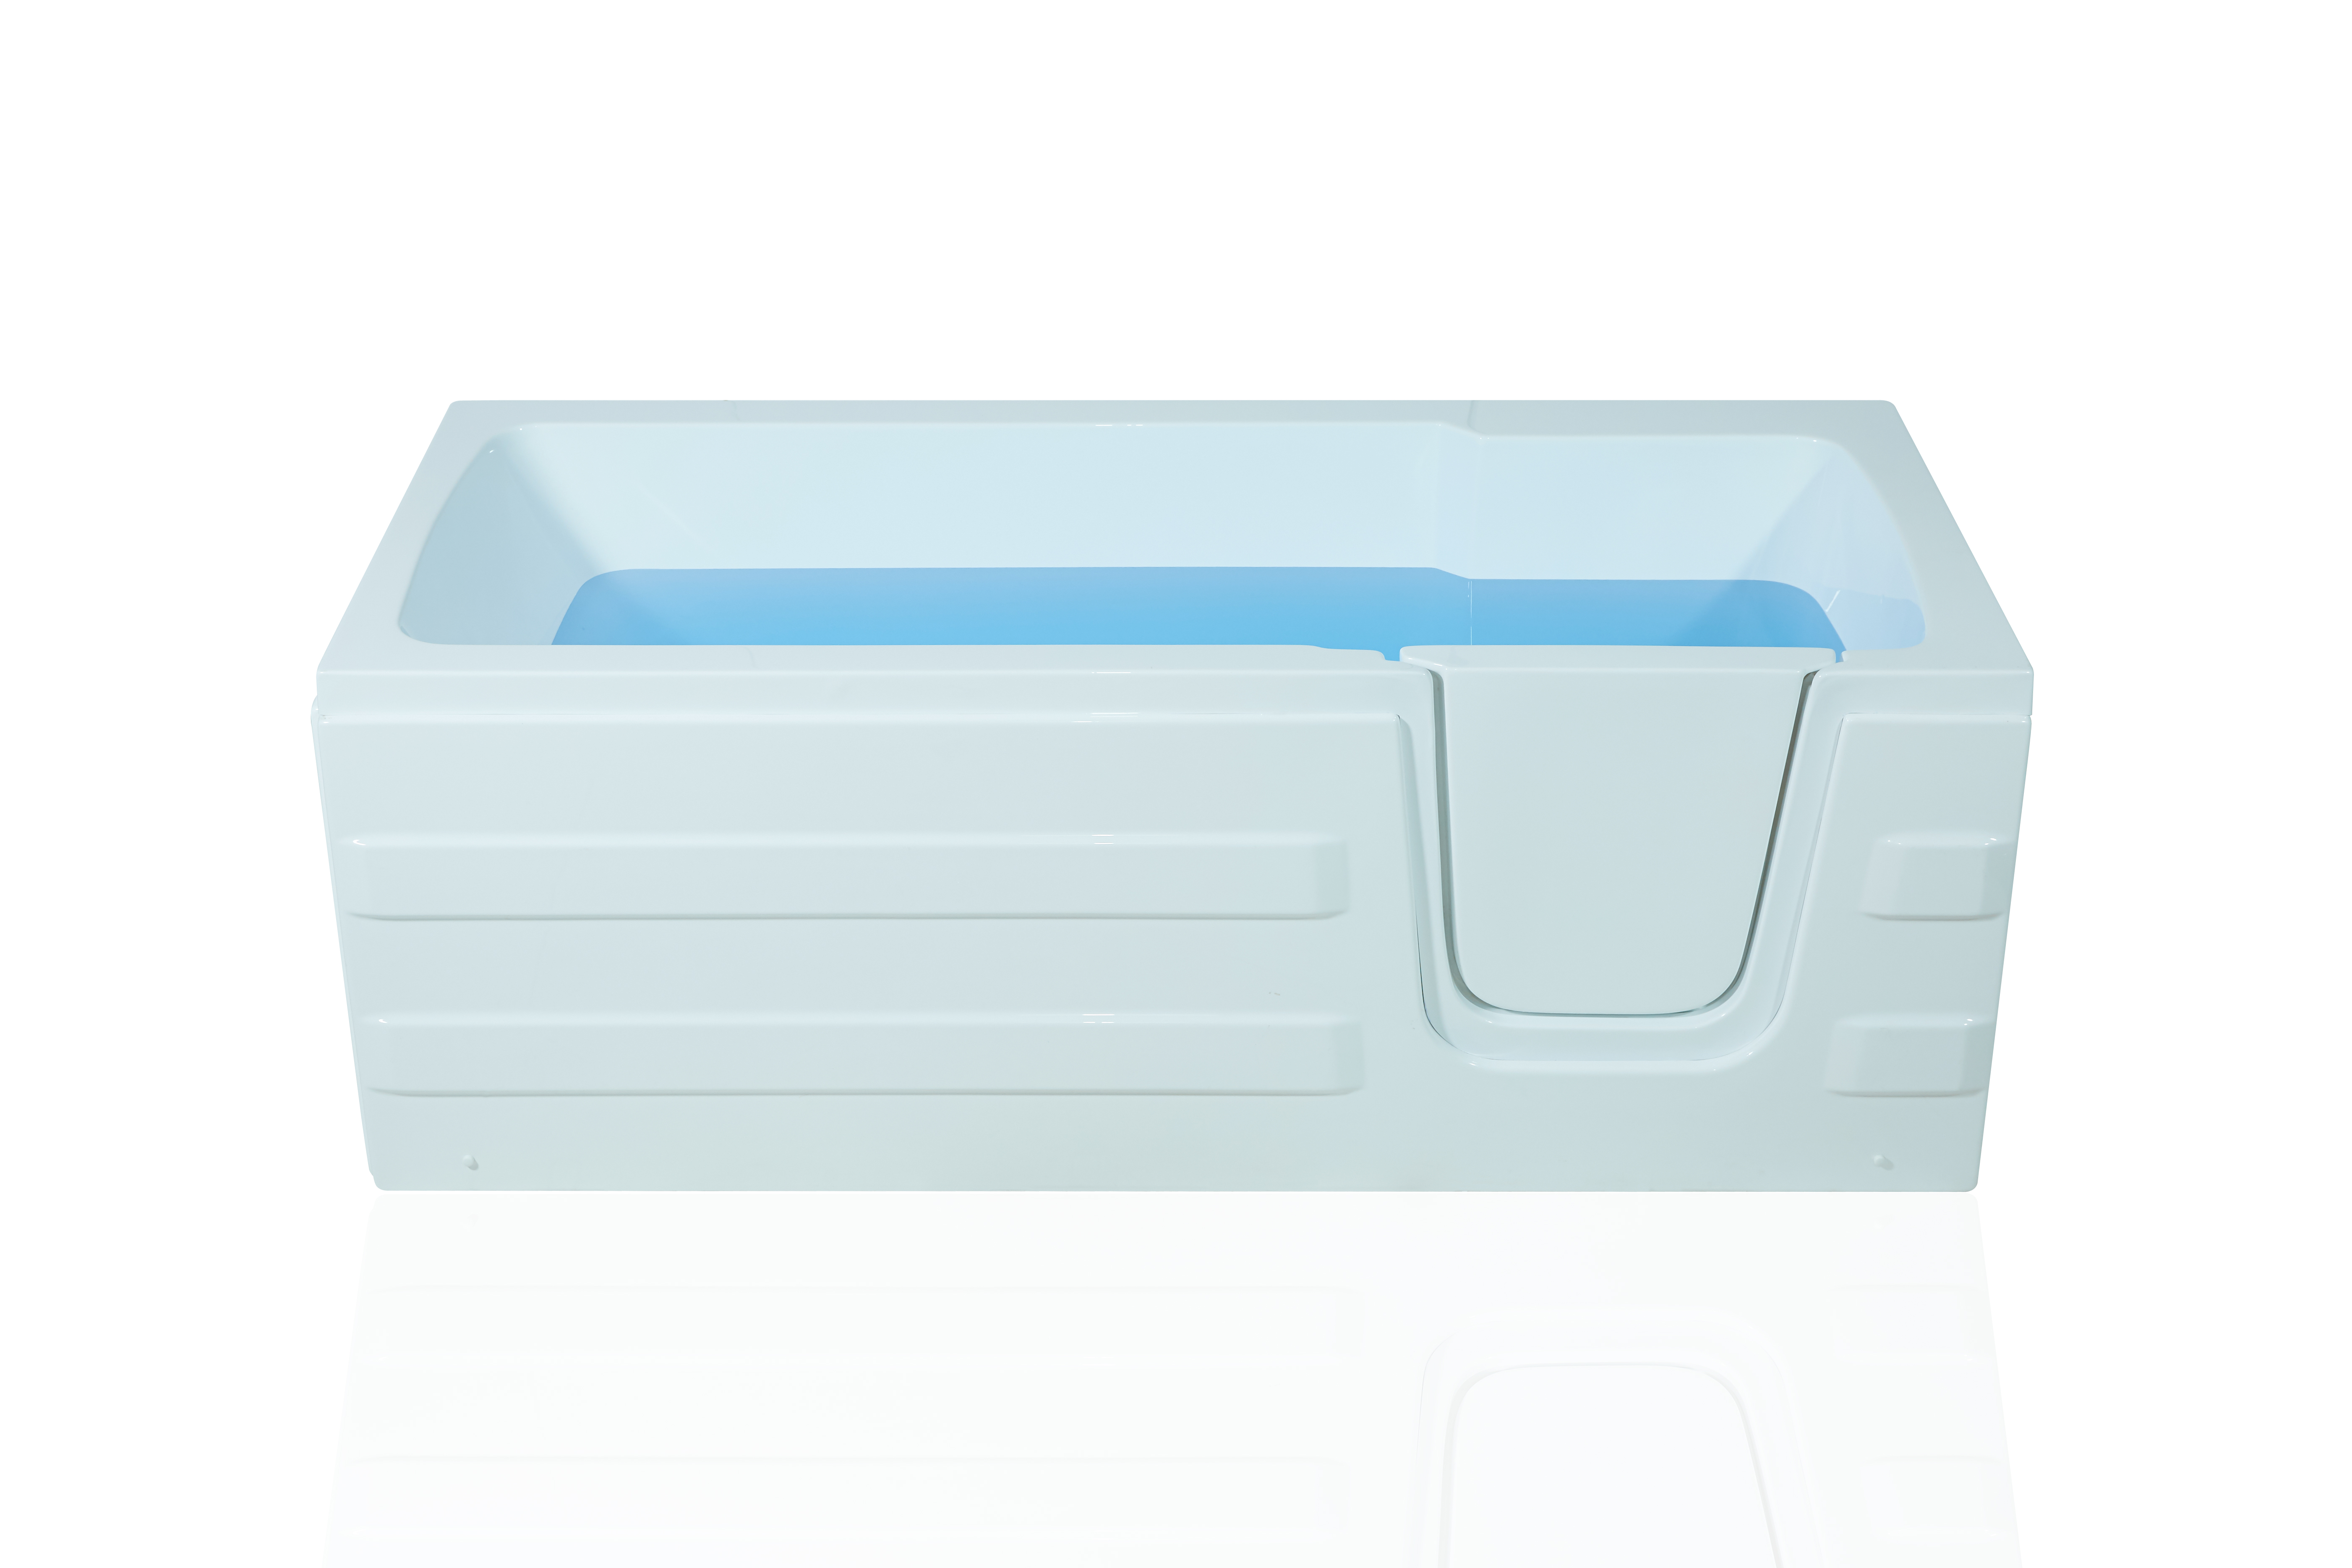 Акриловая ванна Bolu Personas BL-375 155х76 R без г/м для людей с ограниченными возможностями